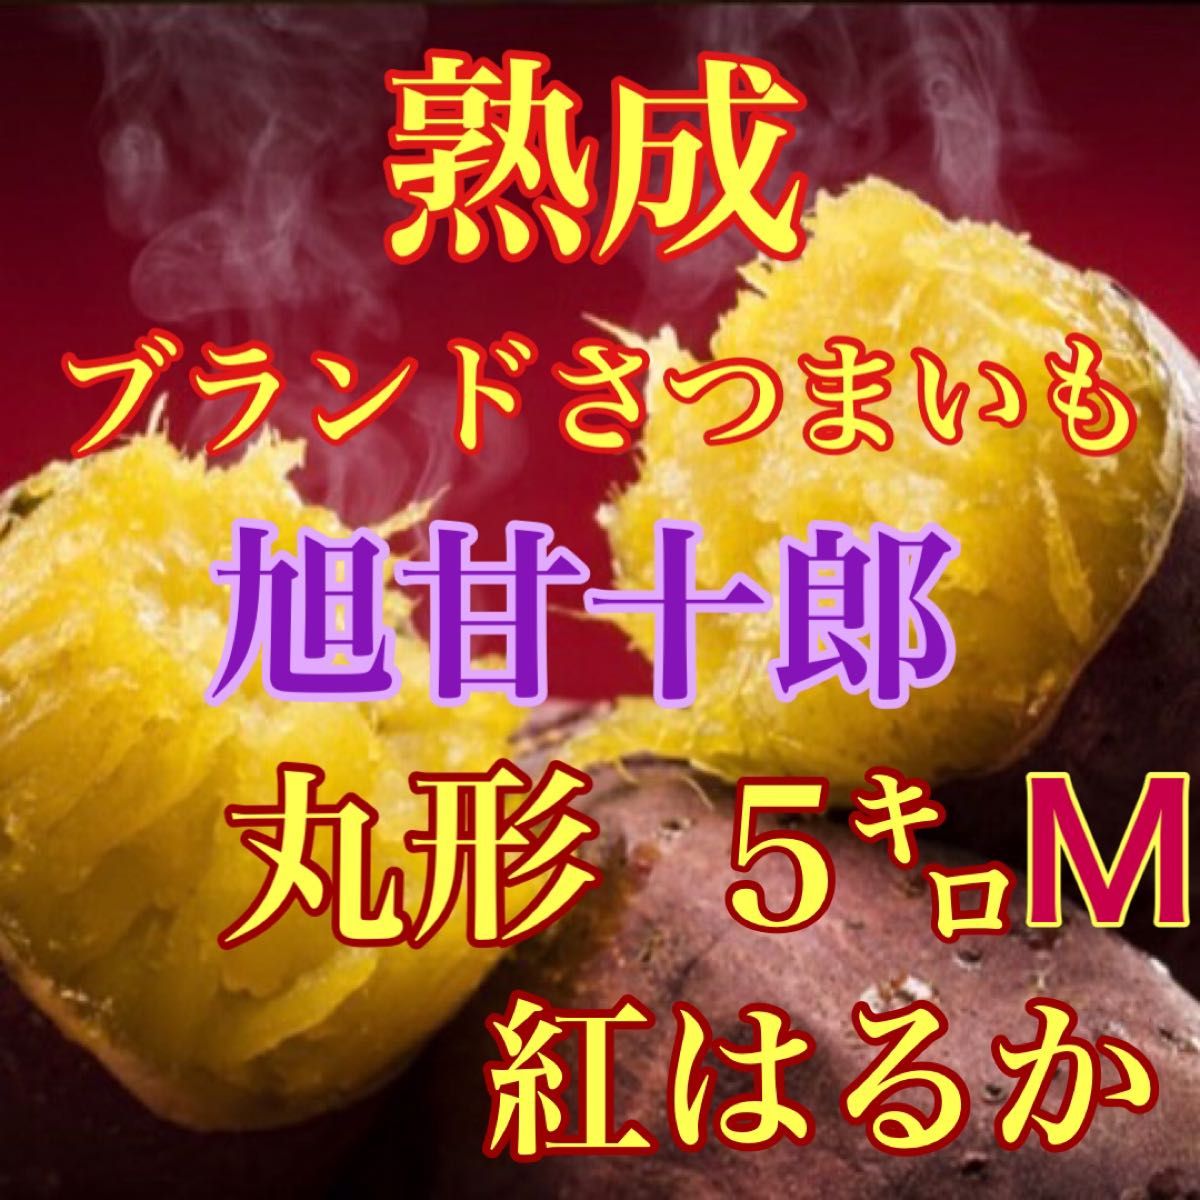 即購入OK SIM様専用出品芋ソムリエが選んだ熟成ブランド芋 旭甘十郎 紅